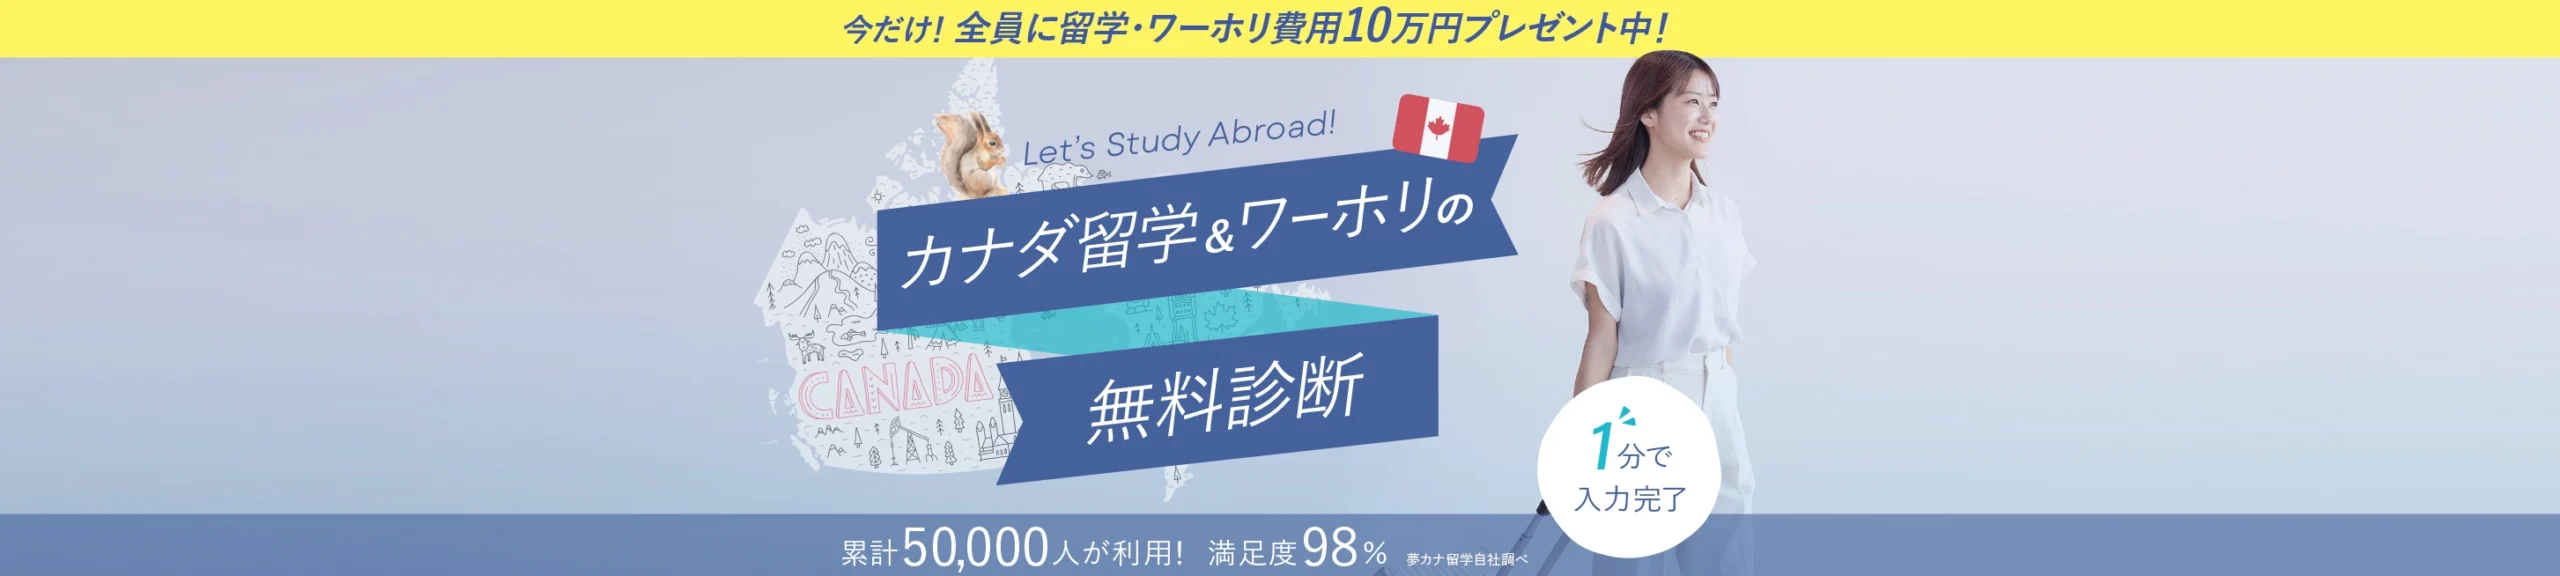 カナダの留学・ワーホリプランの無料診断 累計5000人が利用 満足度98% 1分で入力完了